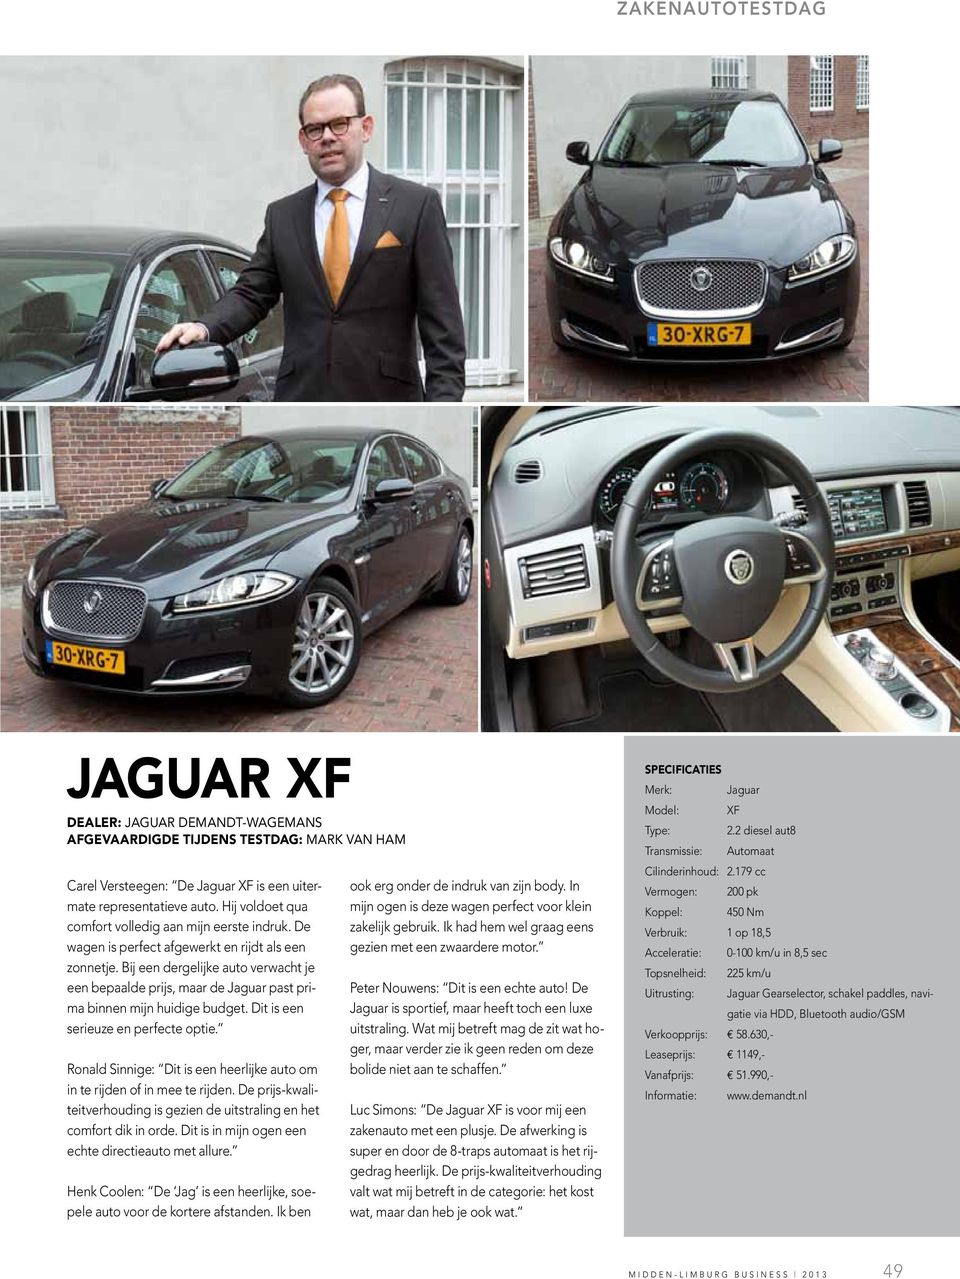 Bij een dergelijke auto verwacht je een bepaalde prijs, maar de Jaguar past prima binnen mijn huidige budget. Dit is een serieuze en perfecte optie.